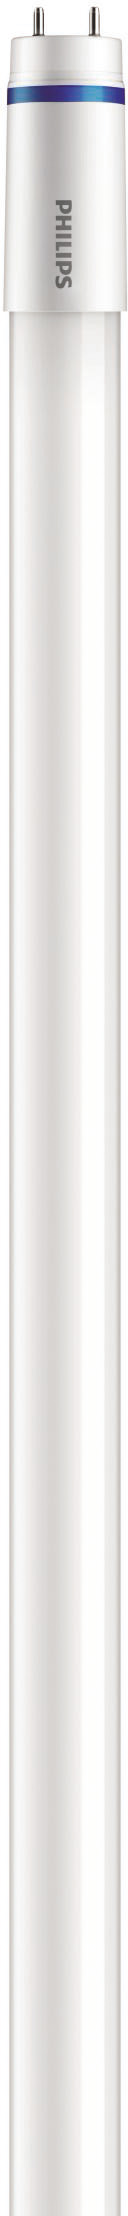 Philips Lighting LED-Tube T8 KVG/VVG G13, 830, 1200mm MASLEDtube #31656000 günstig online kaufen